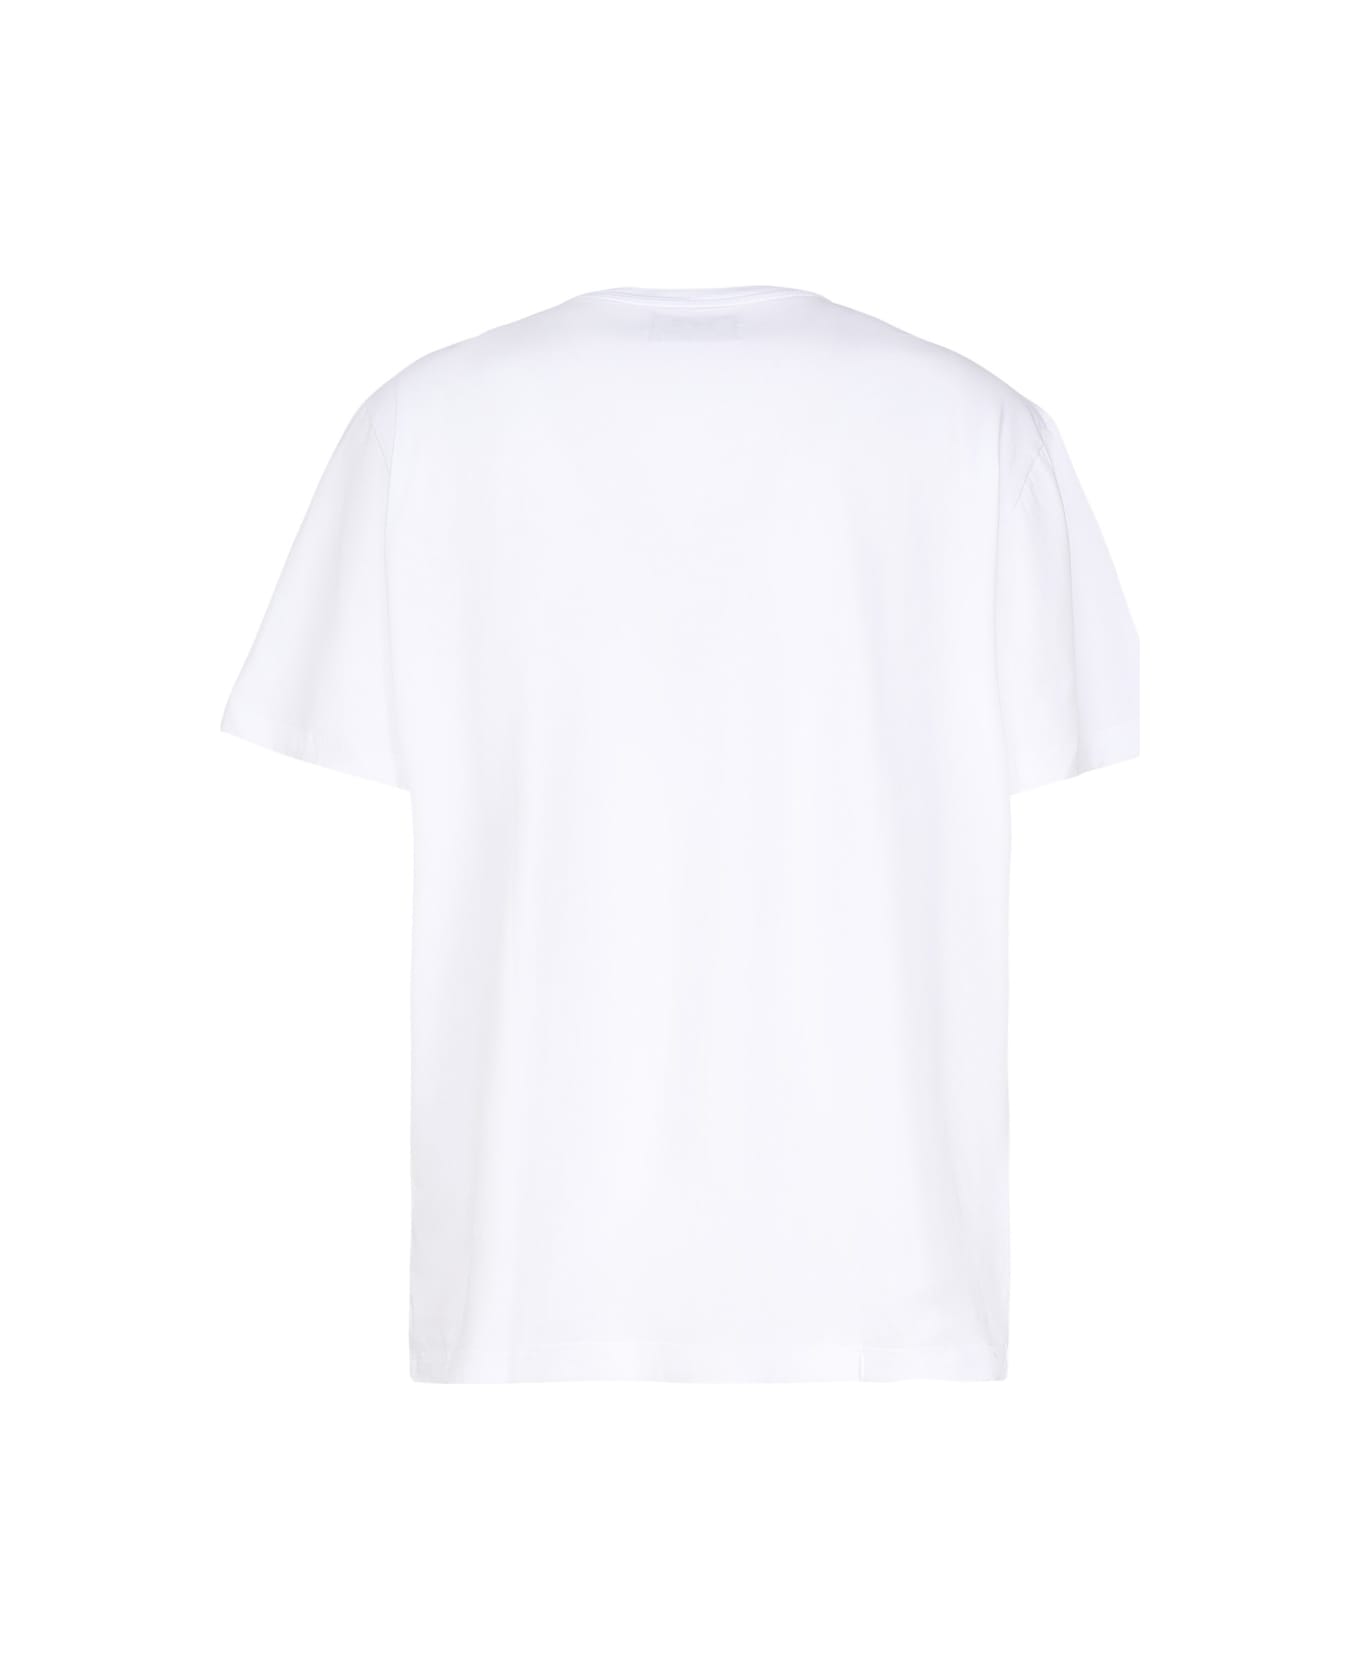 Golden Goose Logo T-shirt - White シャツ